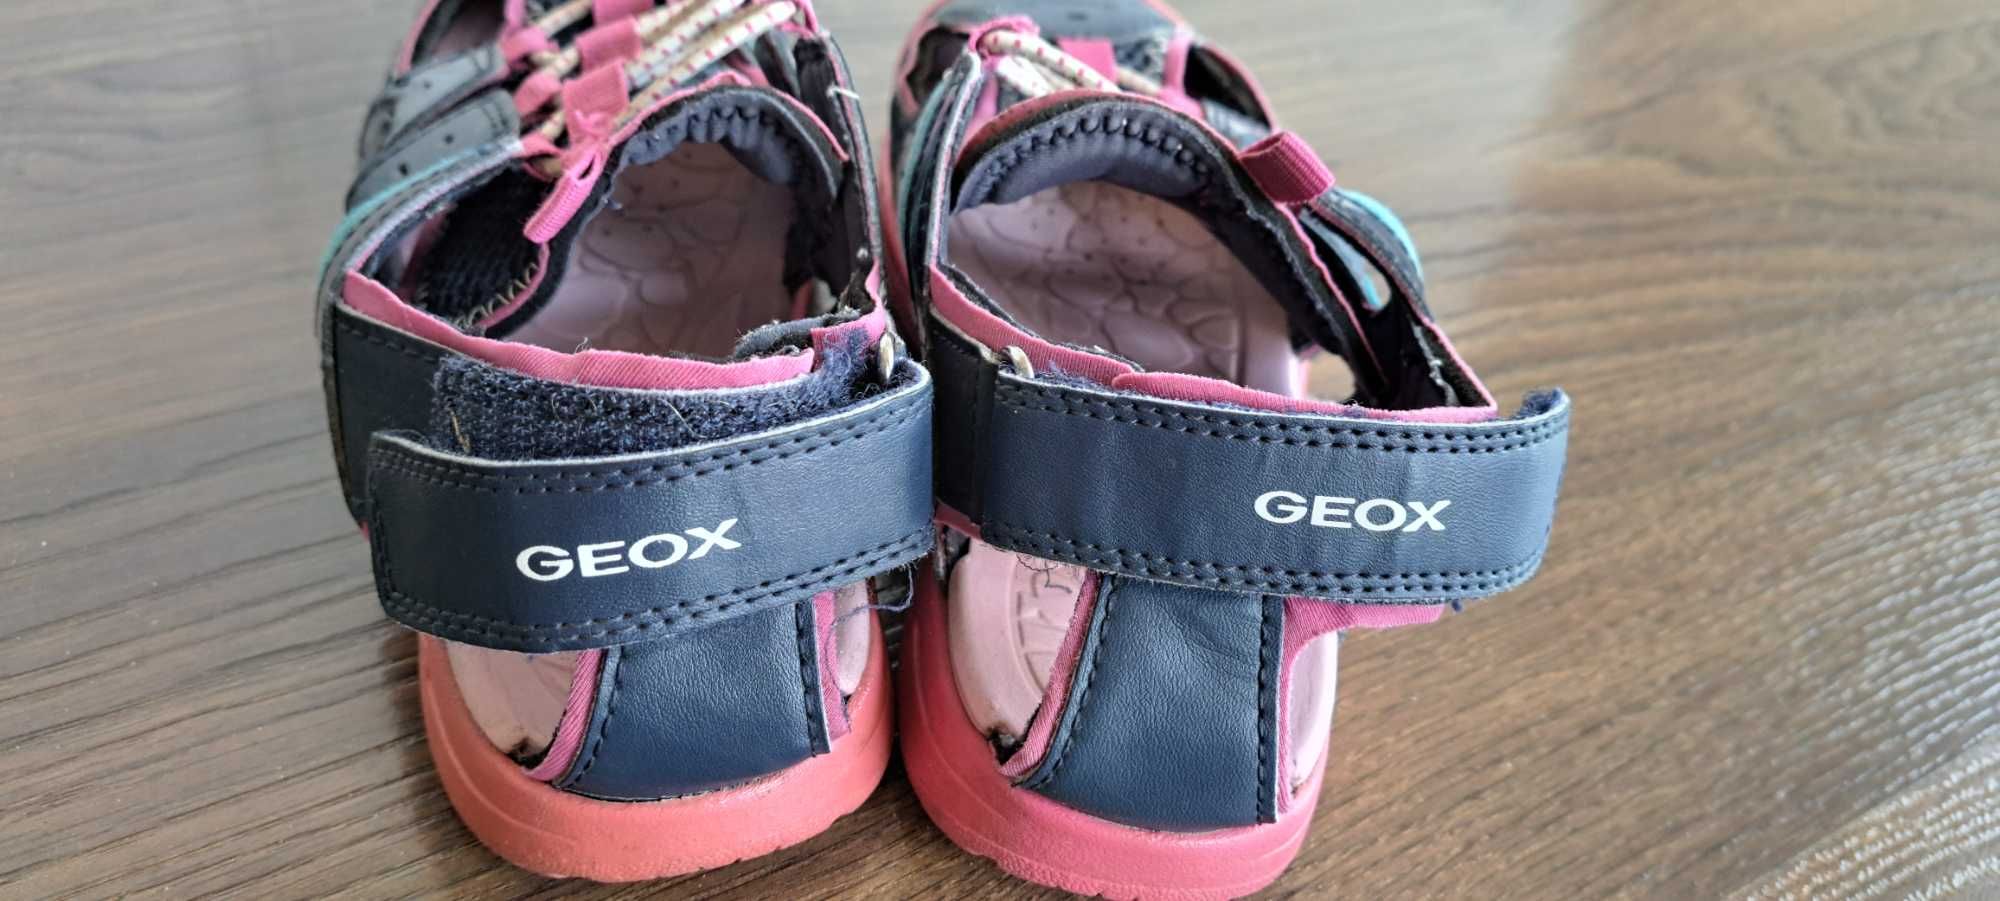 Geox sandały dziewczęce rozm. 34 dl. wkl.22 cm